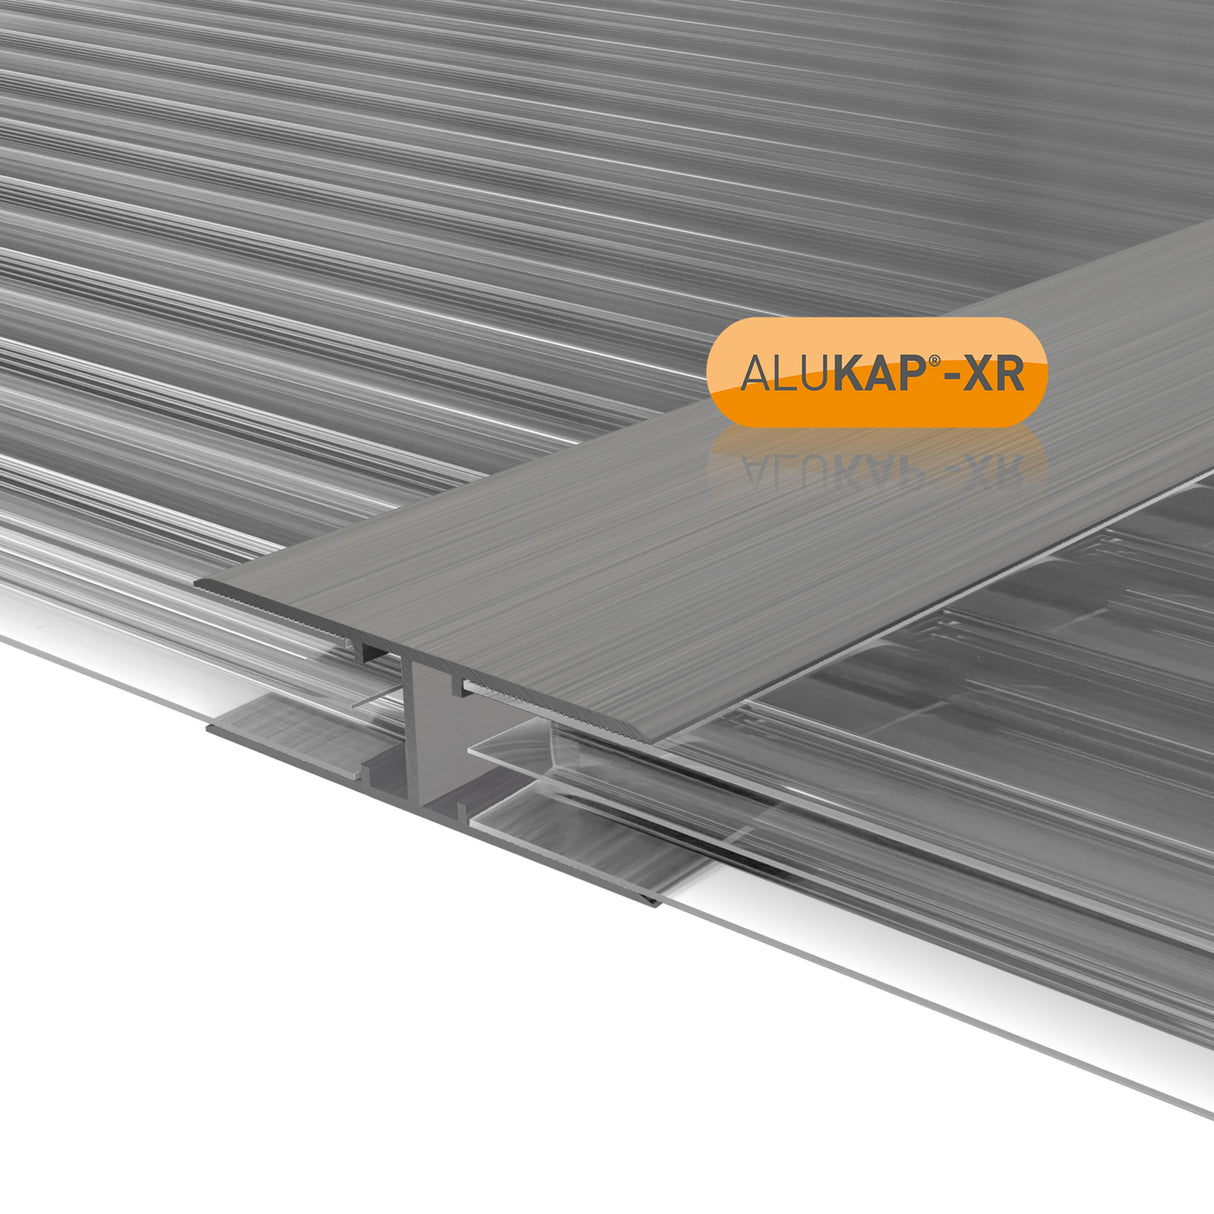 Alukap-XR 16mm Aluminium H Section